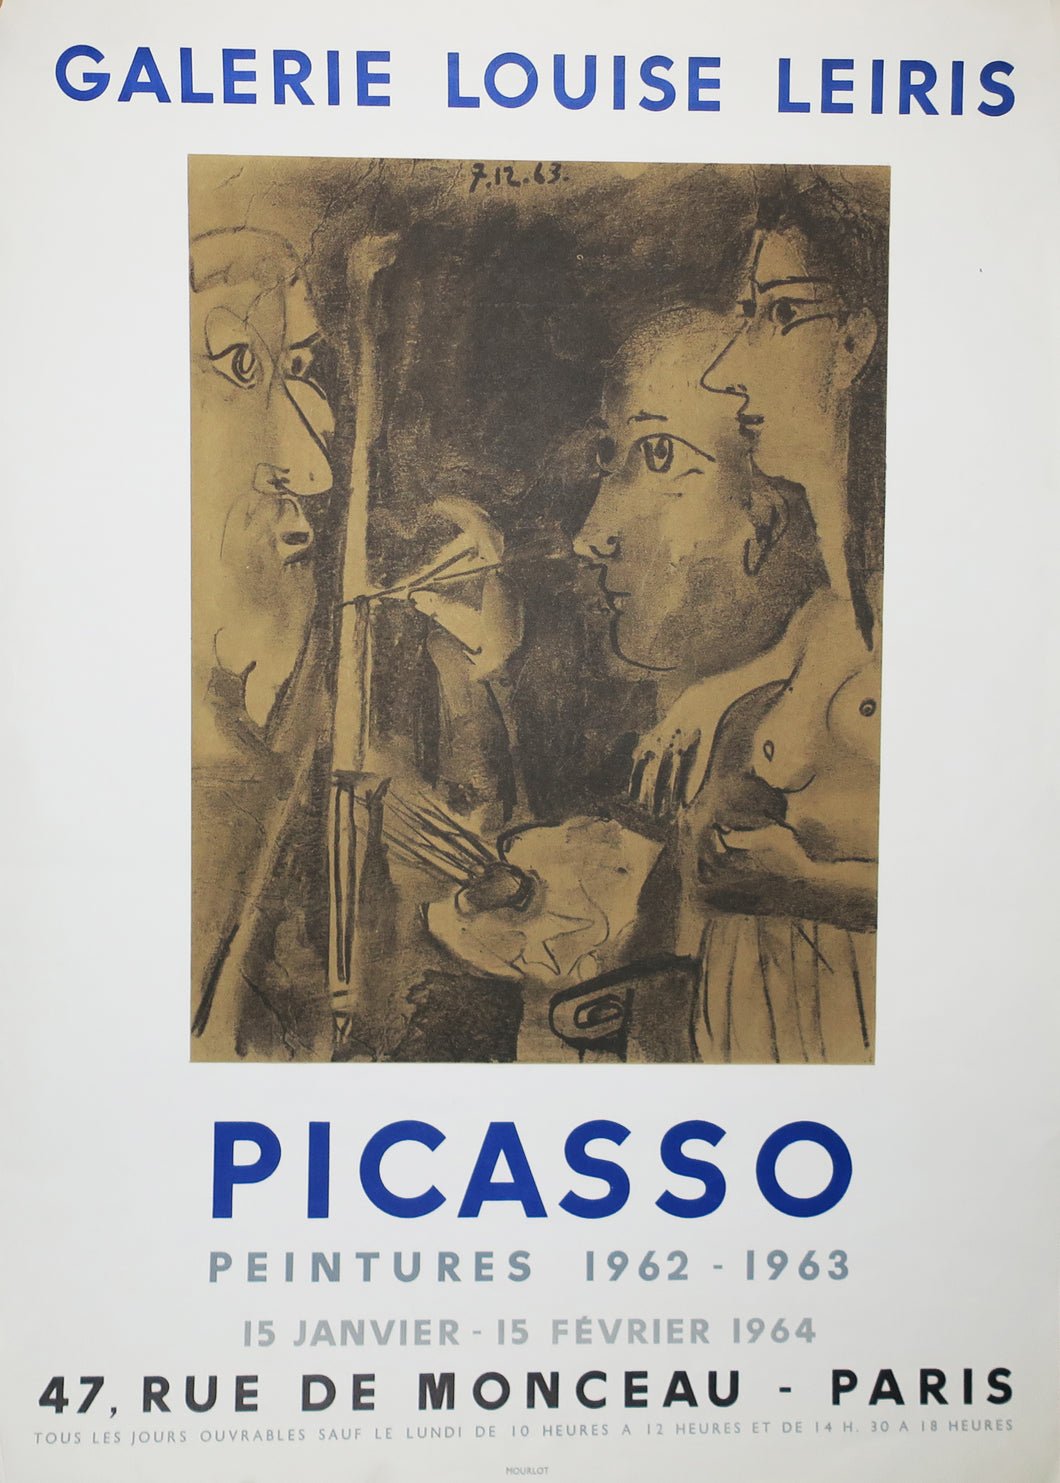 Exposition Galerie Louise Leiris, Picasso - Peintures 1962-1963, Paris.